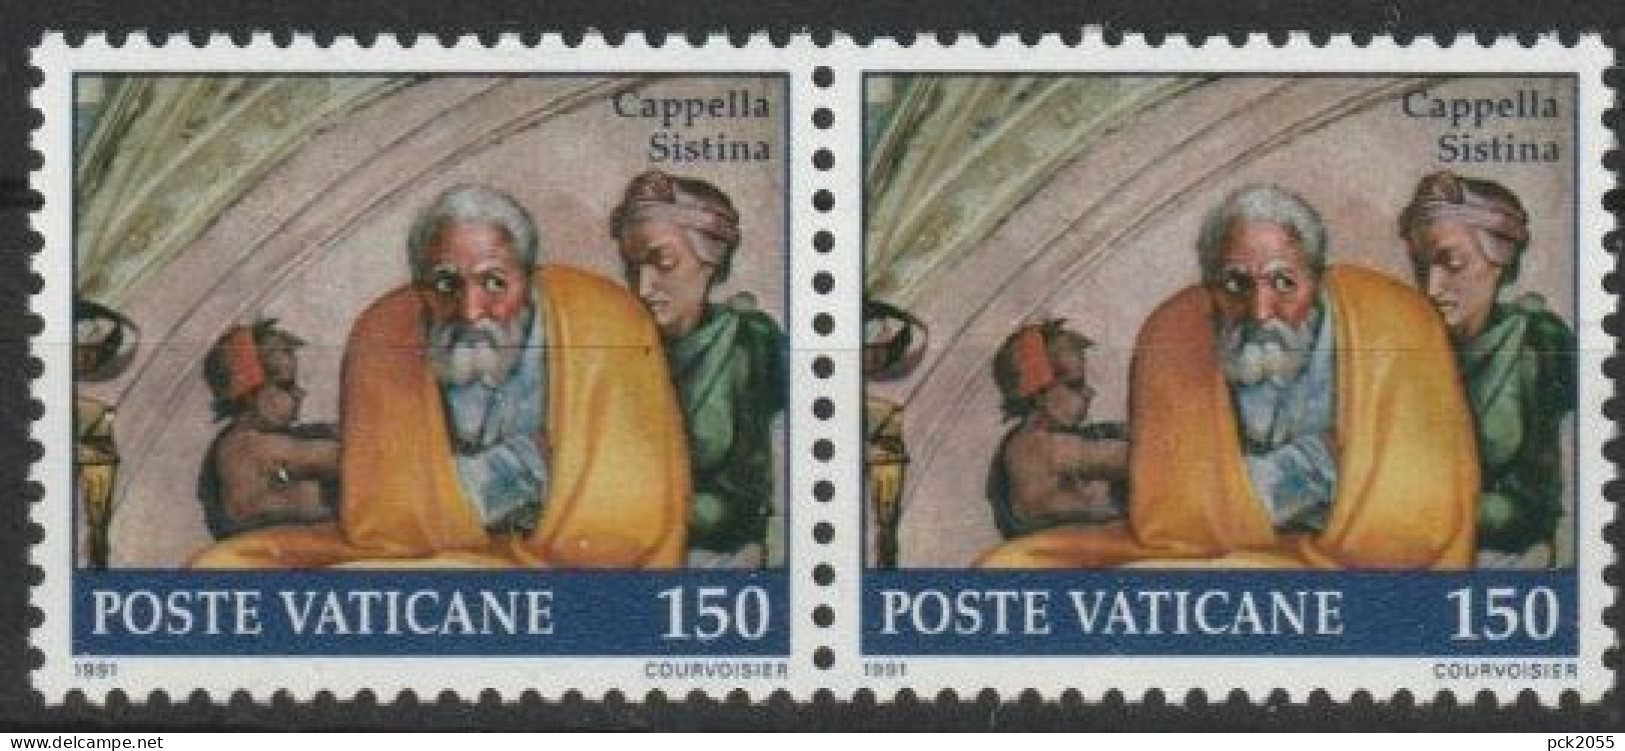 Vatikan 1991 Mi-Nr.1025 Paar ** Postfrisch  Restaurierung Der Sixtinischen Kapelle  ( B2872 )günstige Versandkosten - Ungebraucht